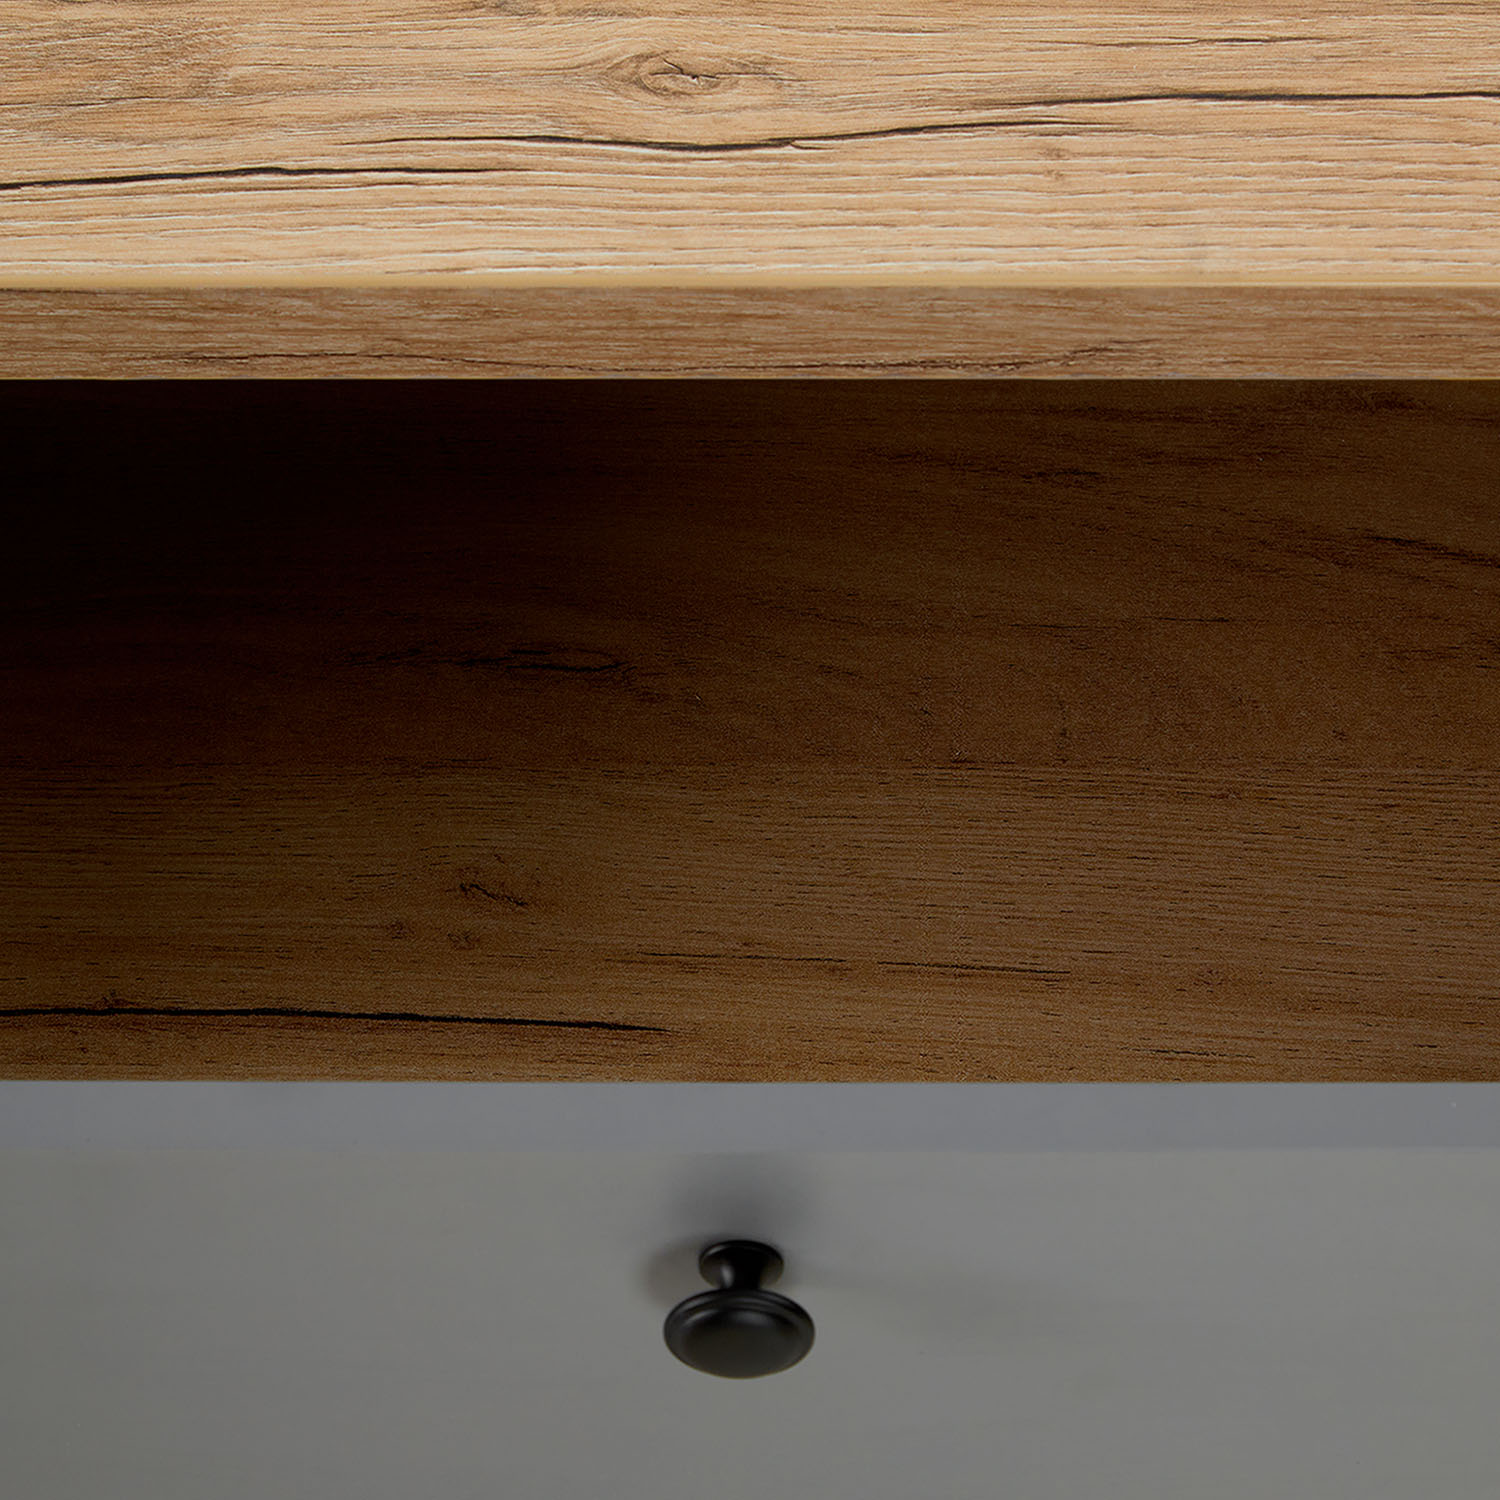 Couchtisch 110x60 cm Sofatisch Grau Wohnzimmertisch Beistelltisch Holz Tisch Stauraum Schubkasten